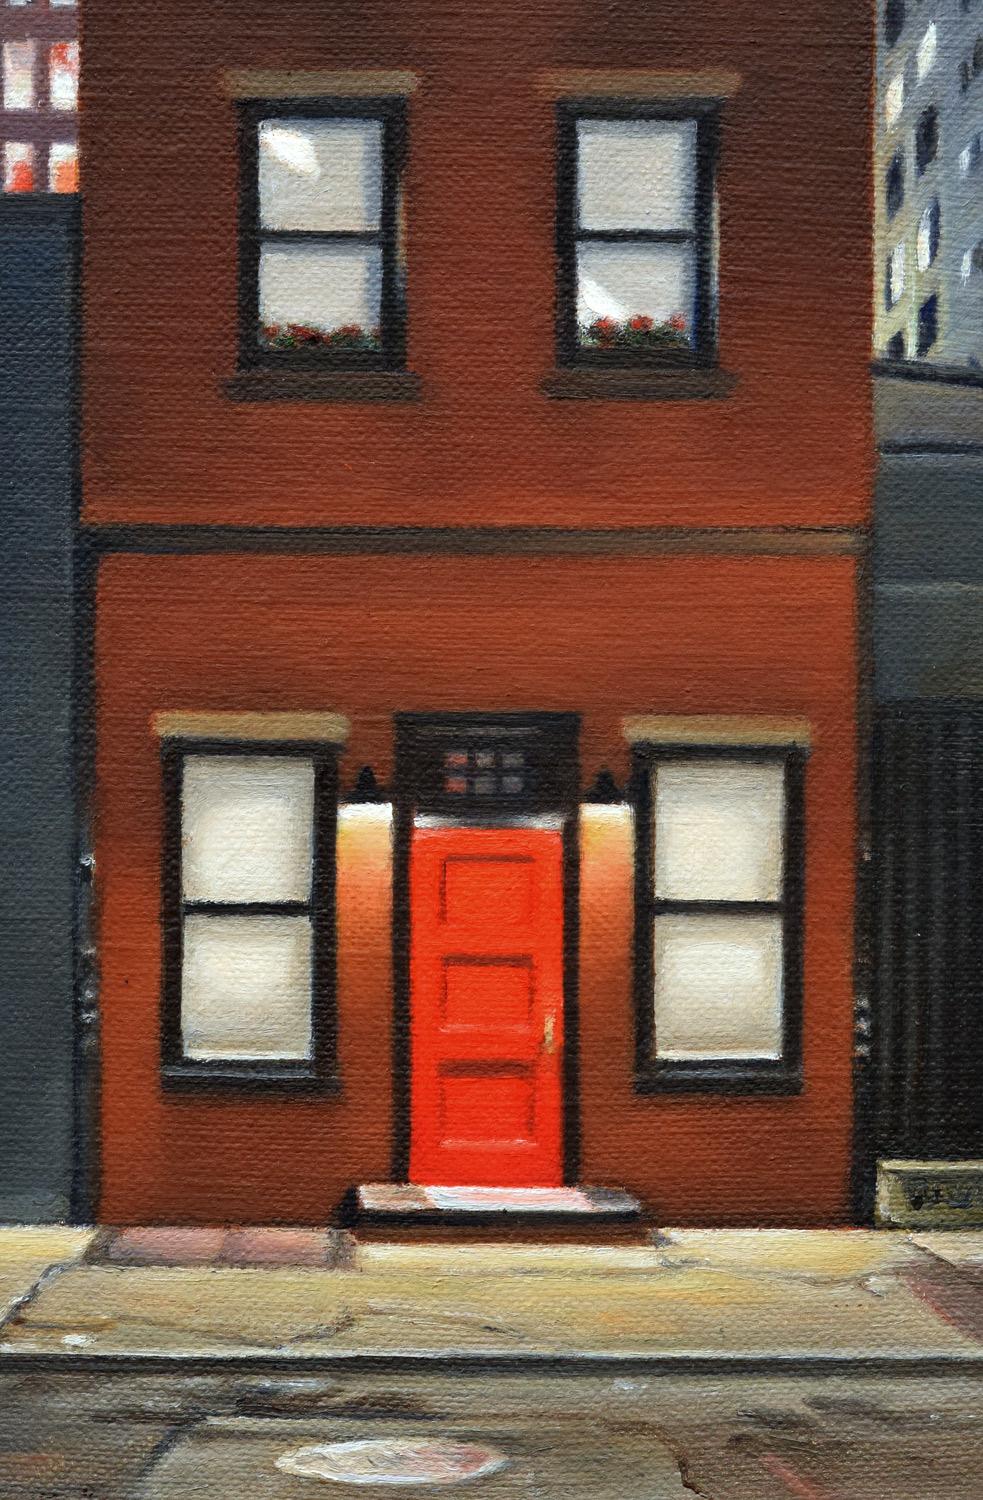 <p>Kommentare des Künstlers<br>Ein Stadthaus in der West 27th Street zieht nachts die Aufmerksamkeit auf sich, seine rote Tür scheint in der Dunkelheit zu leuchten. Die Schatten von Straßenschildern und Baufahrzeugen tragen zum urbanen Ambiente bei,